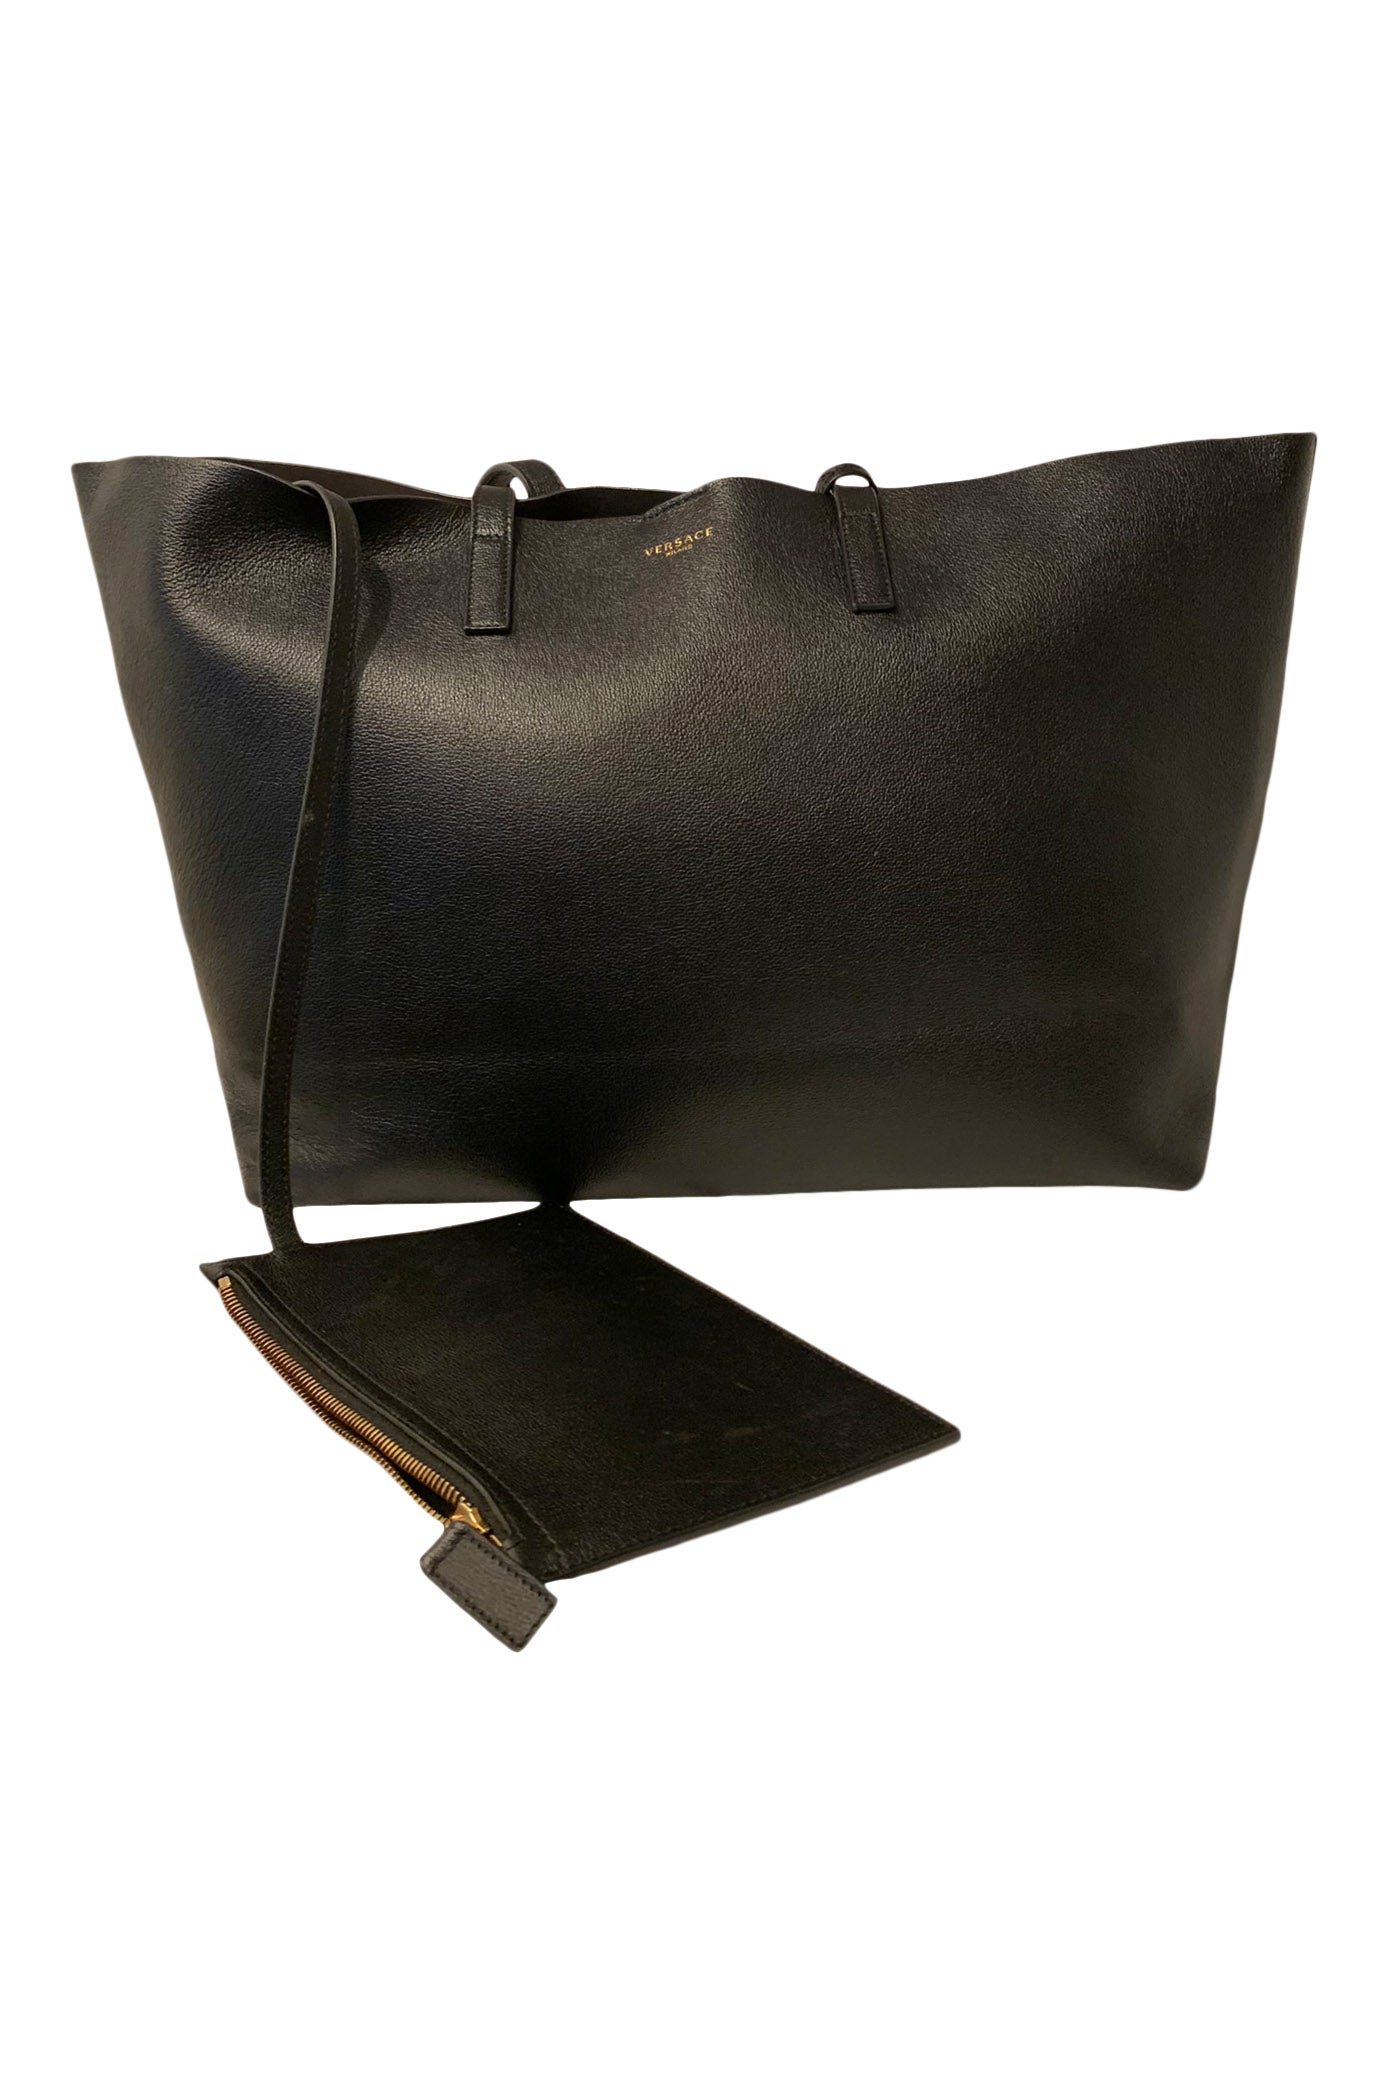 La Vachette Handbags Black - Black Feather Embossed Leather Tote